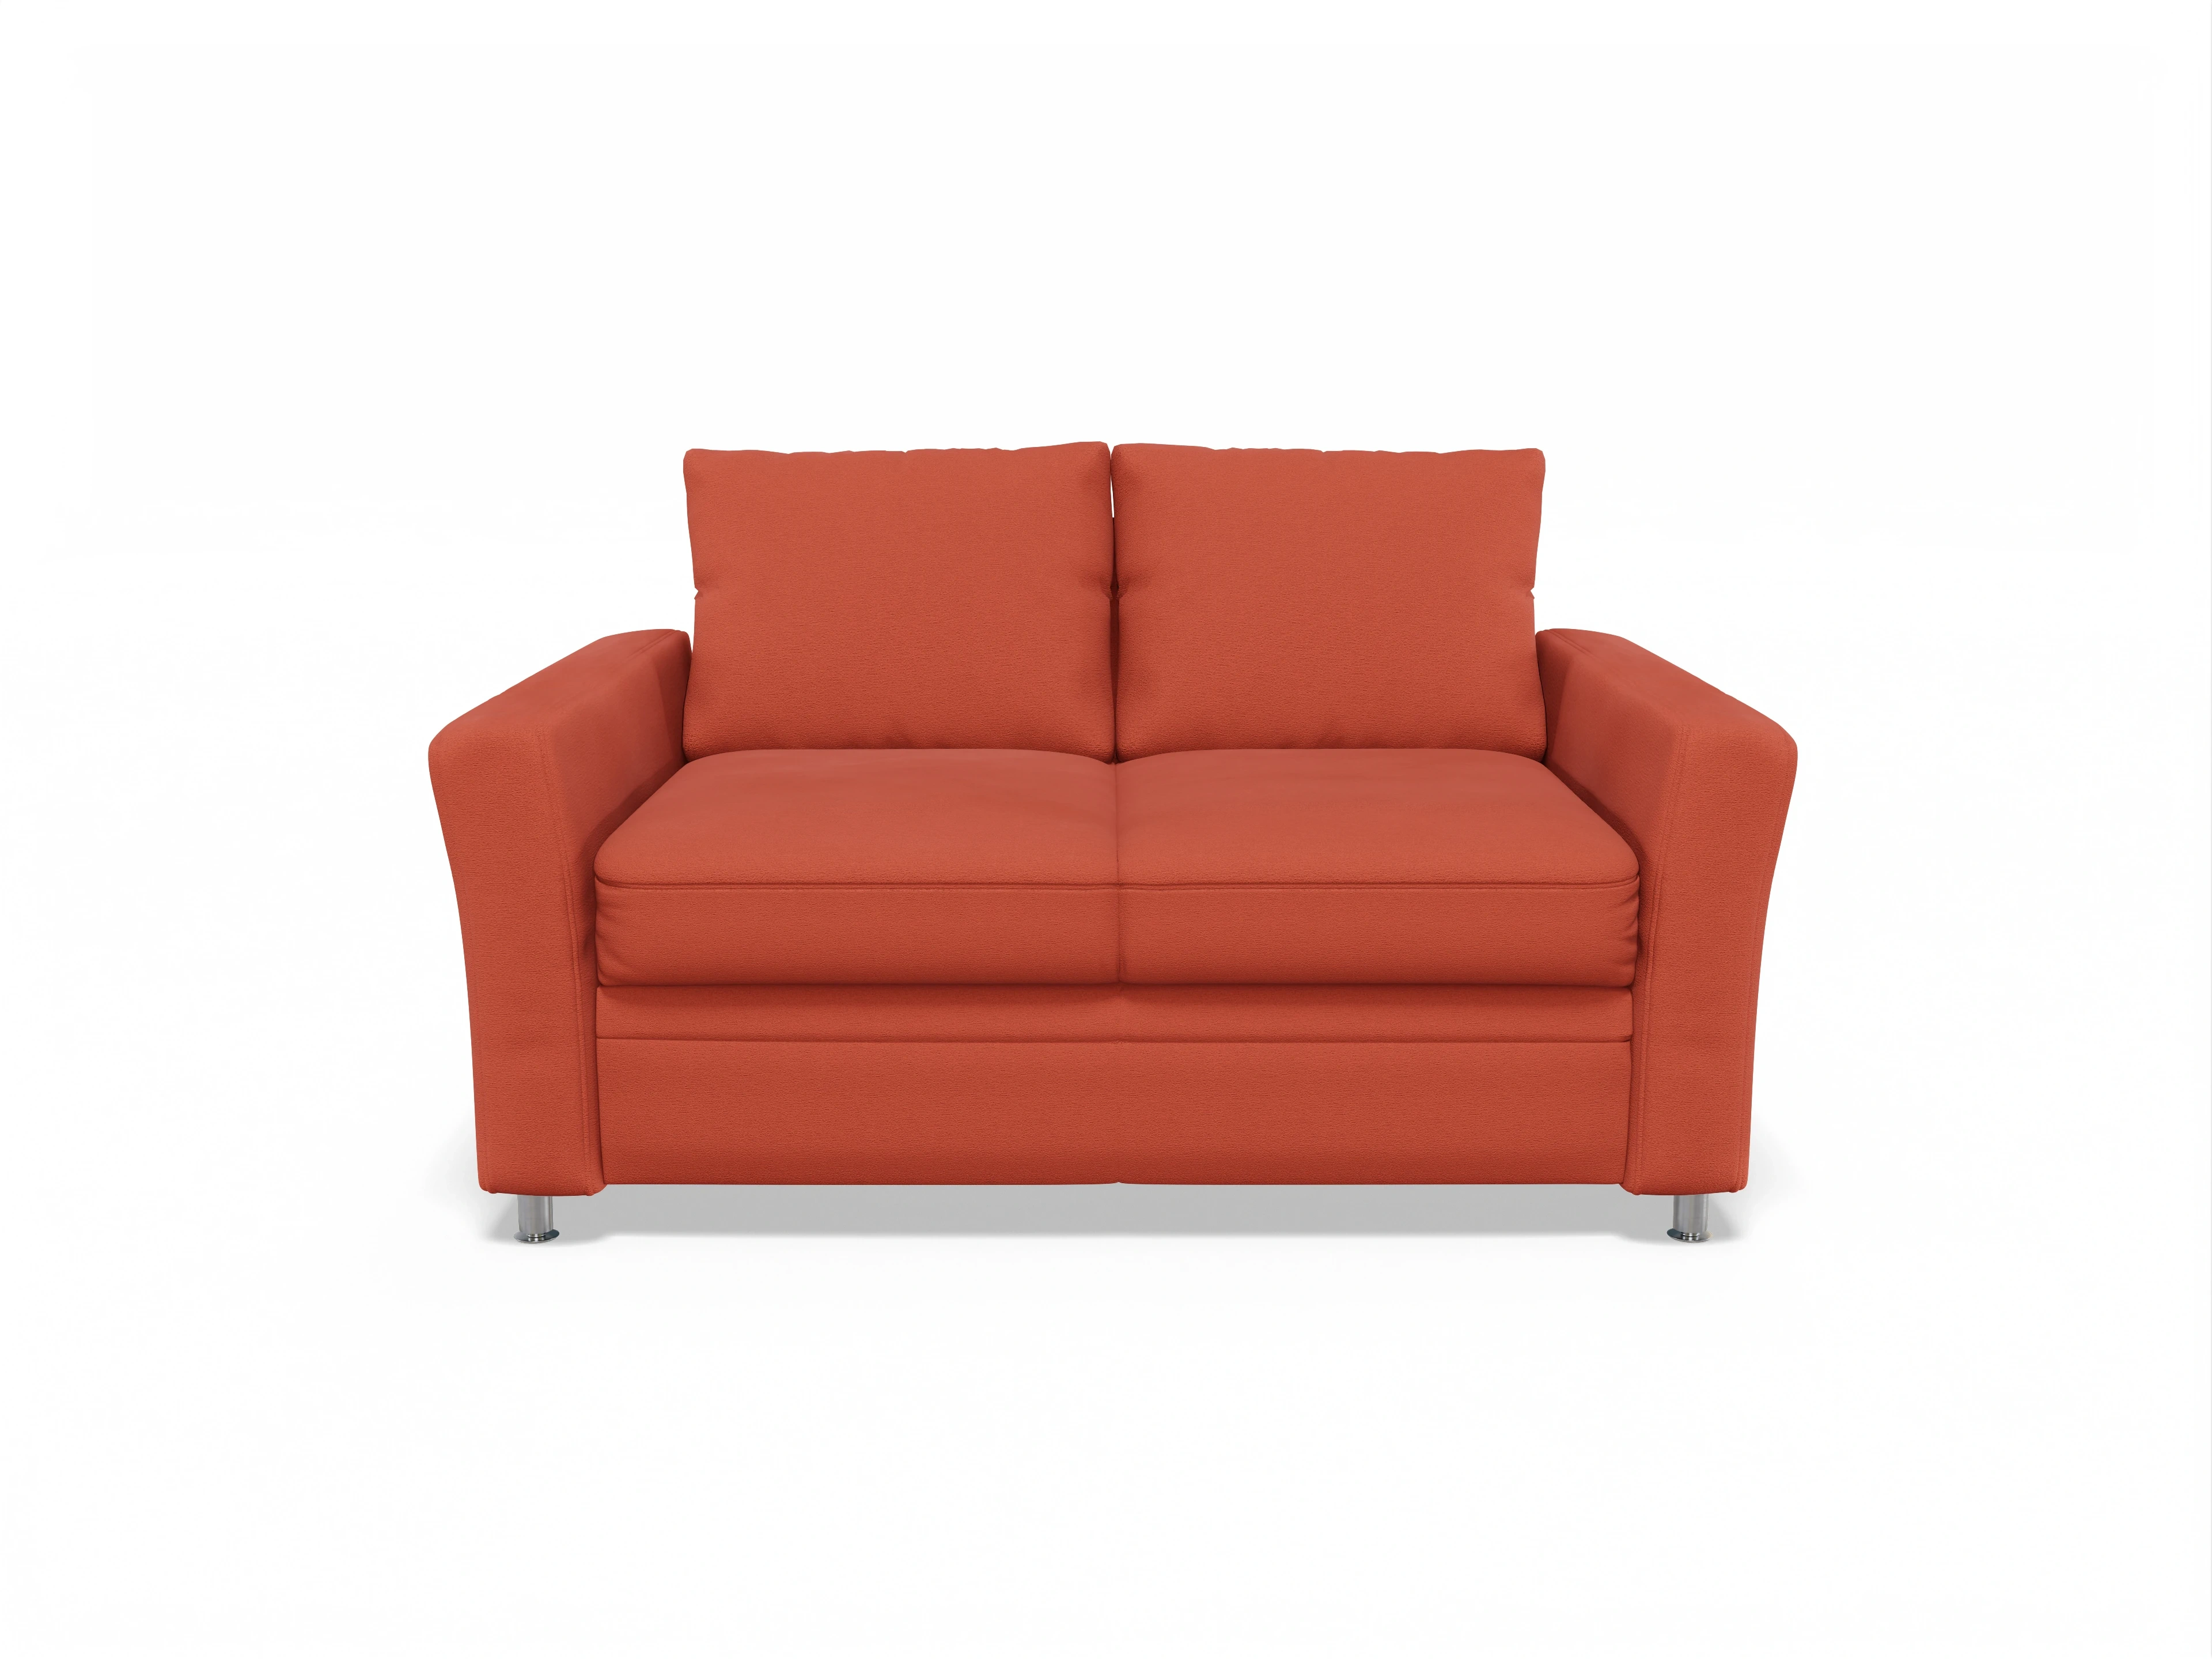 Sofa orange aus der Multipolster Farbwelt